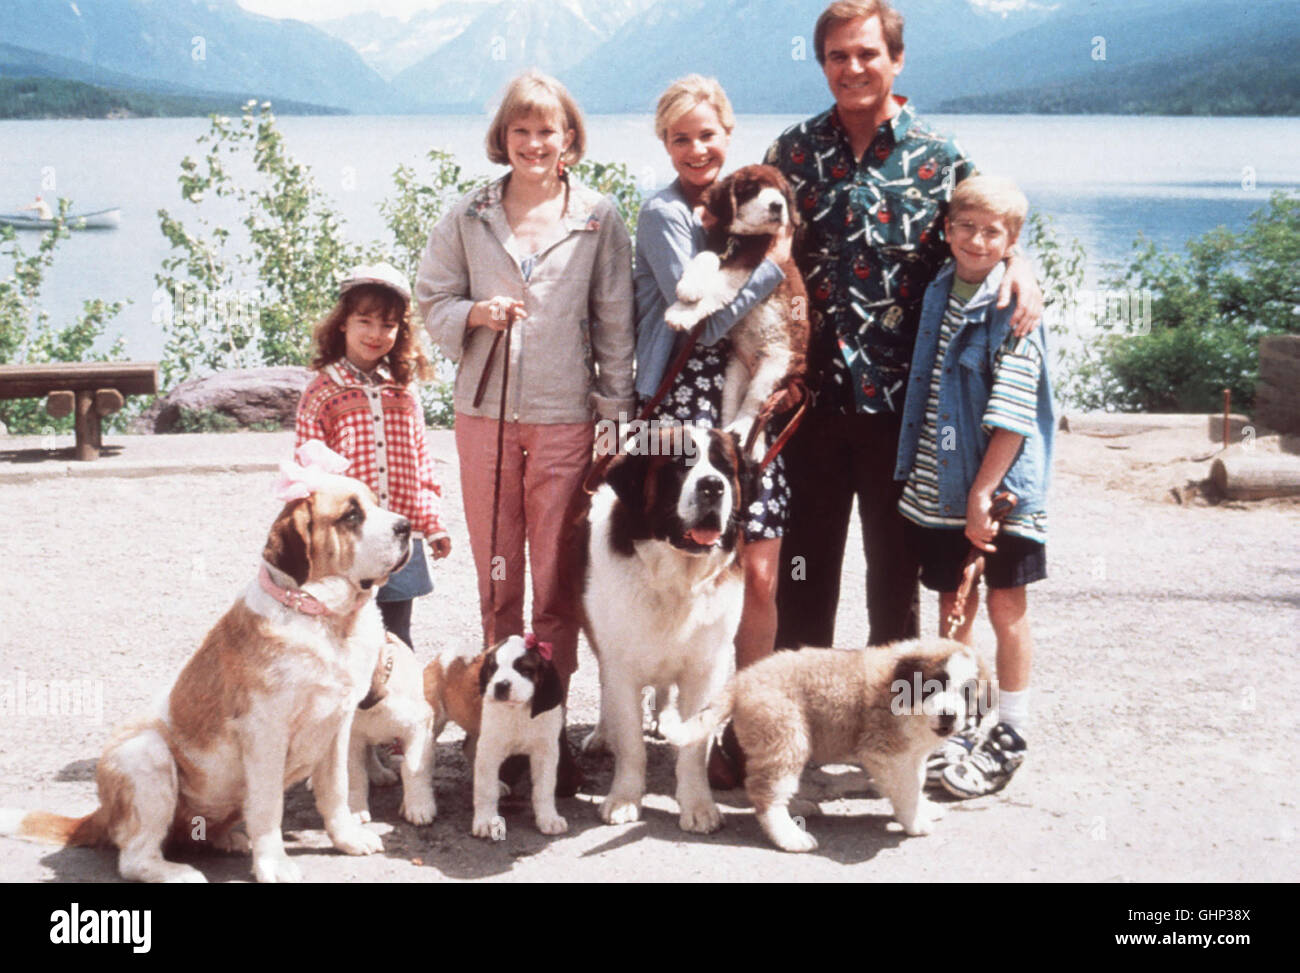 Berhardinerhund Beethoven ist zur großen Überraschung der Familie Newton  auf heimlich Freiersfüßen gewandelt... Bild : Die Eltern George (CHARLES  GRODIN) und Alice Newton (BONNIE HUNT), ihre Kinder Emily (SARAH ROSE  CARR), Ted (